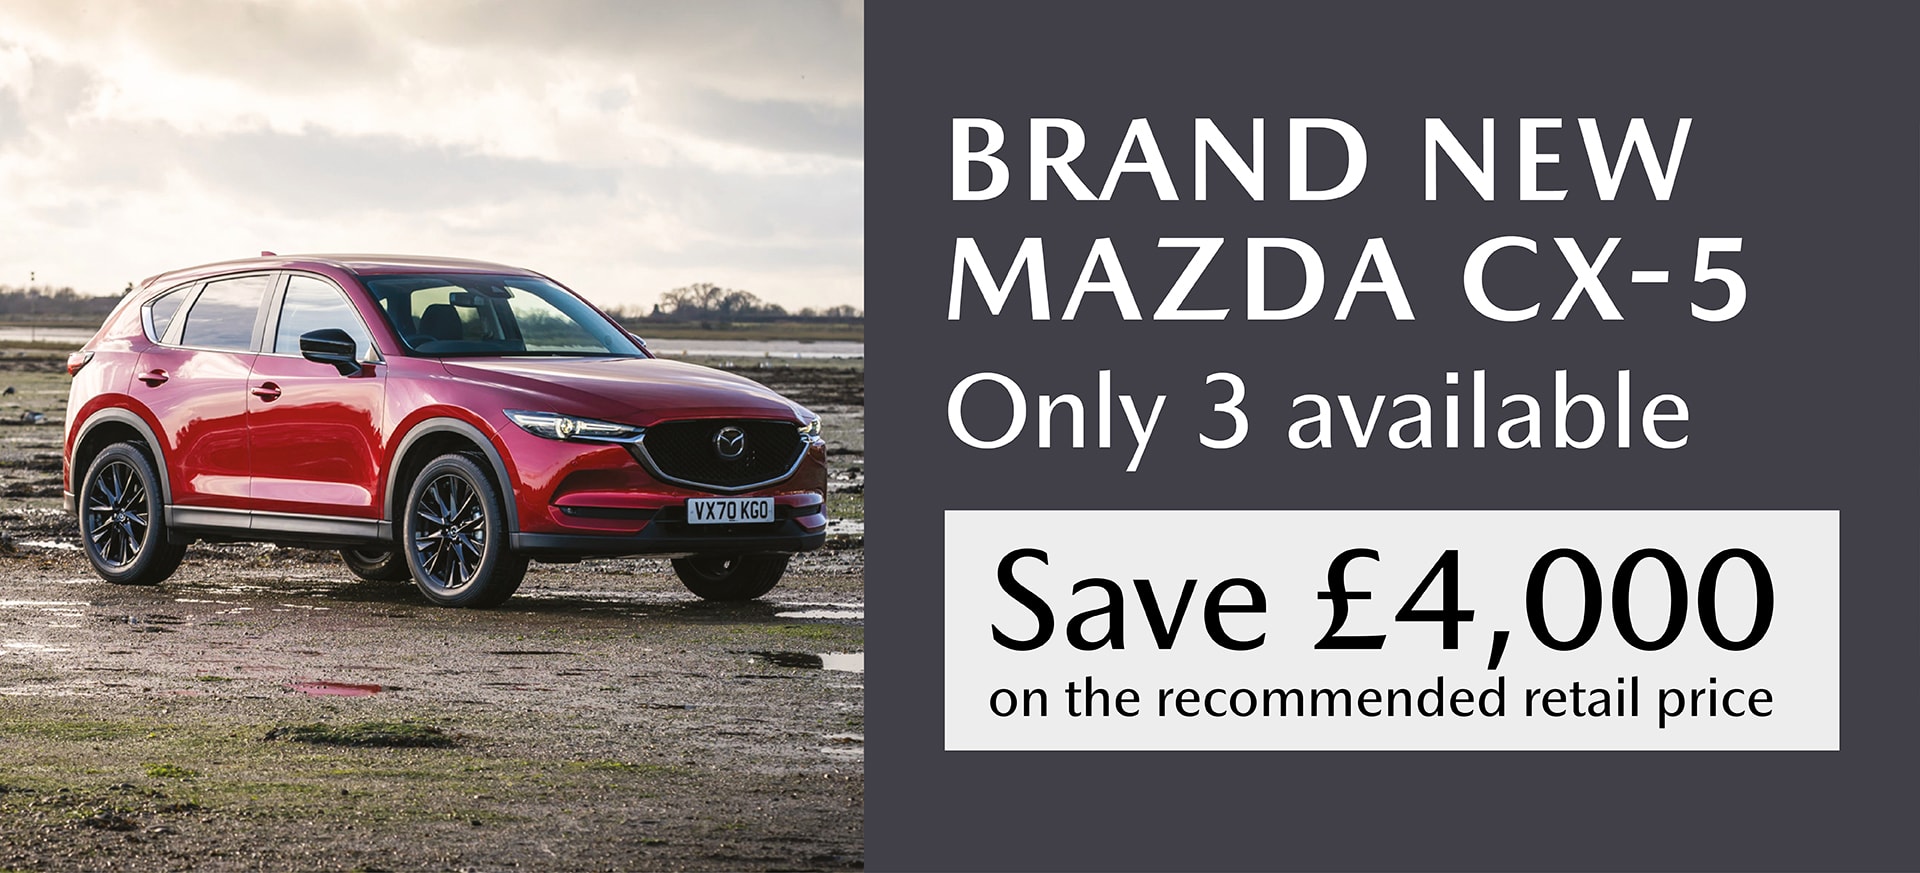 Mazda CX 5 Offer